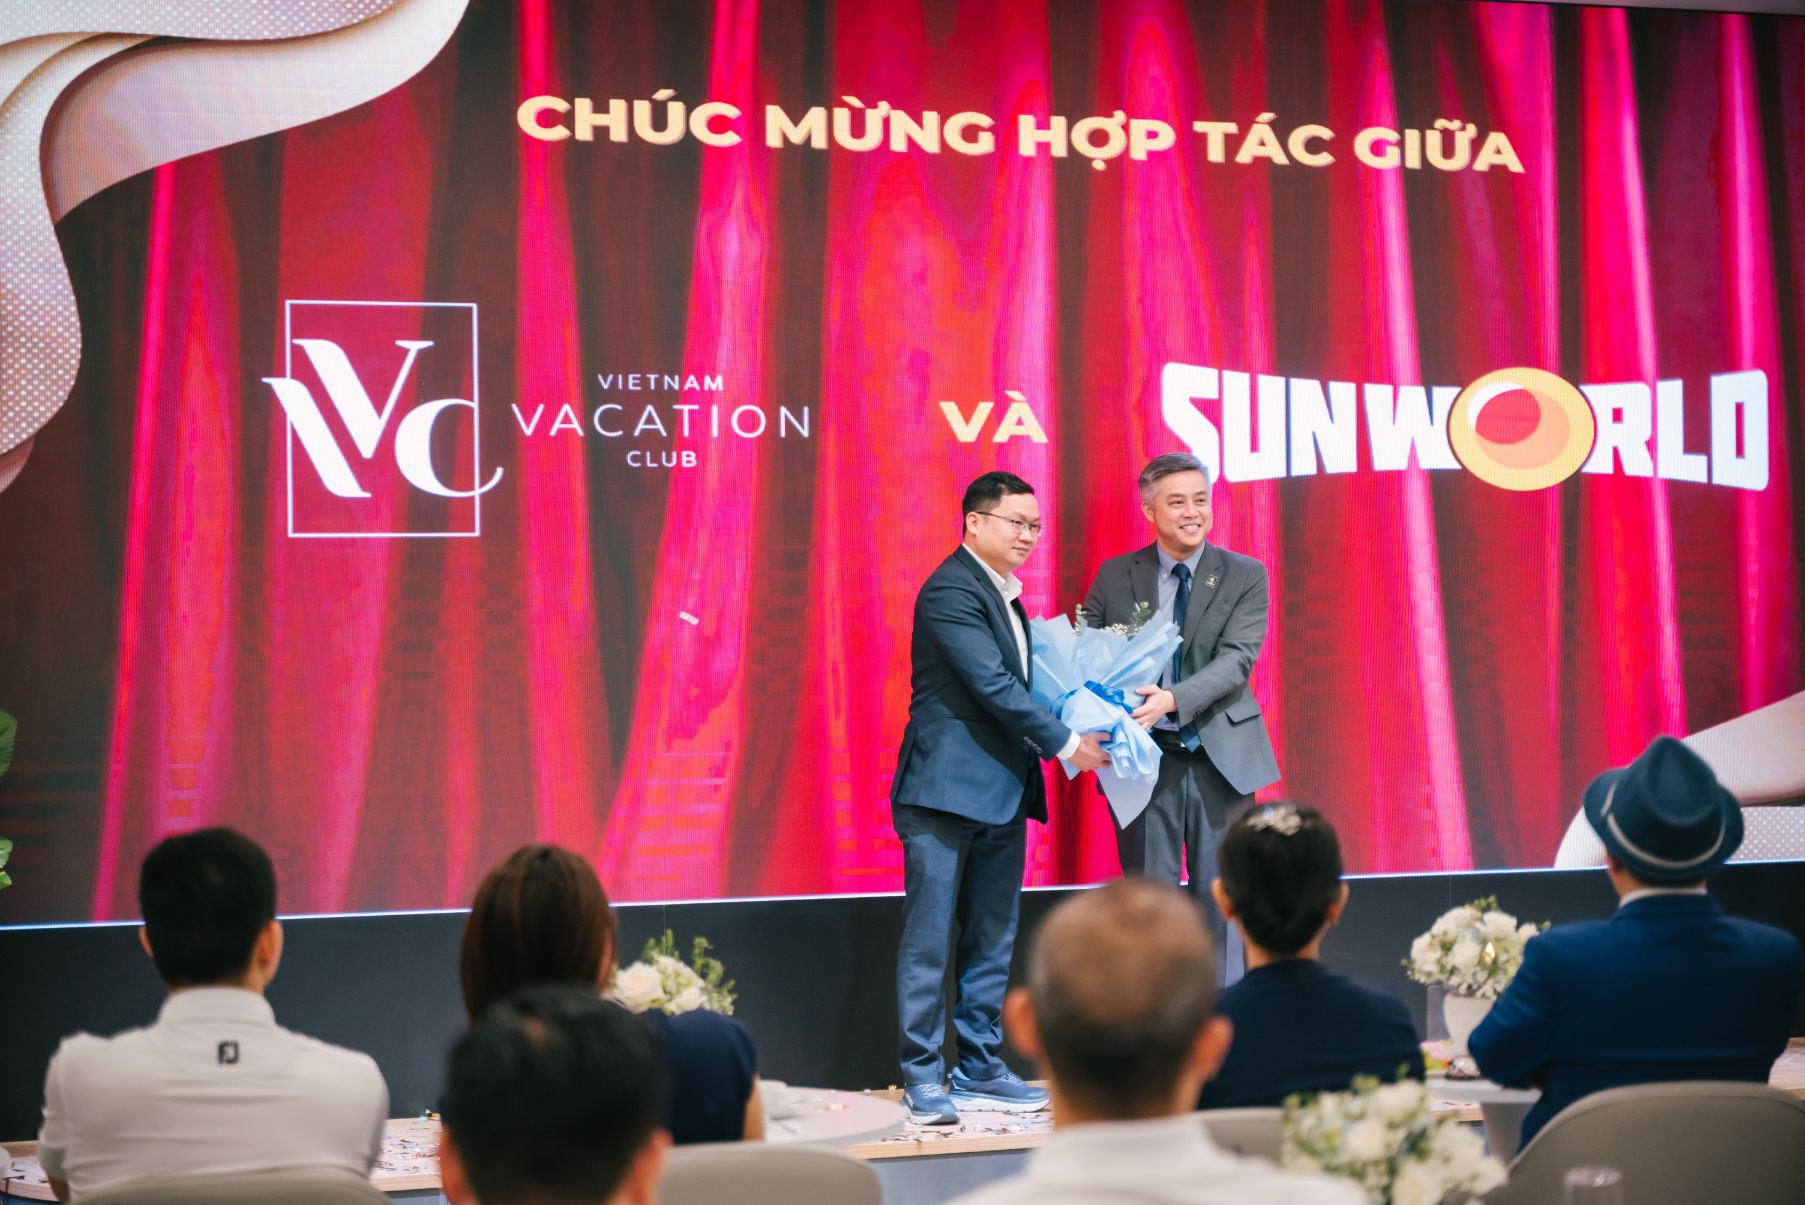 Vietnam Vacation Club 4 Vietnam Vacation Club khai trương chi nhánh miền Nam tại TP.HCM